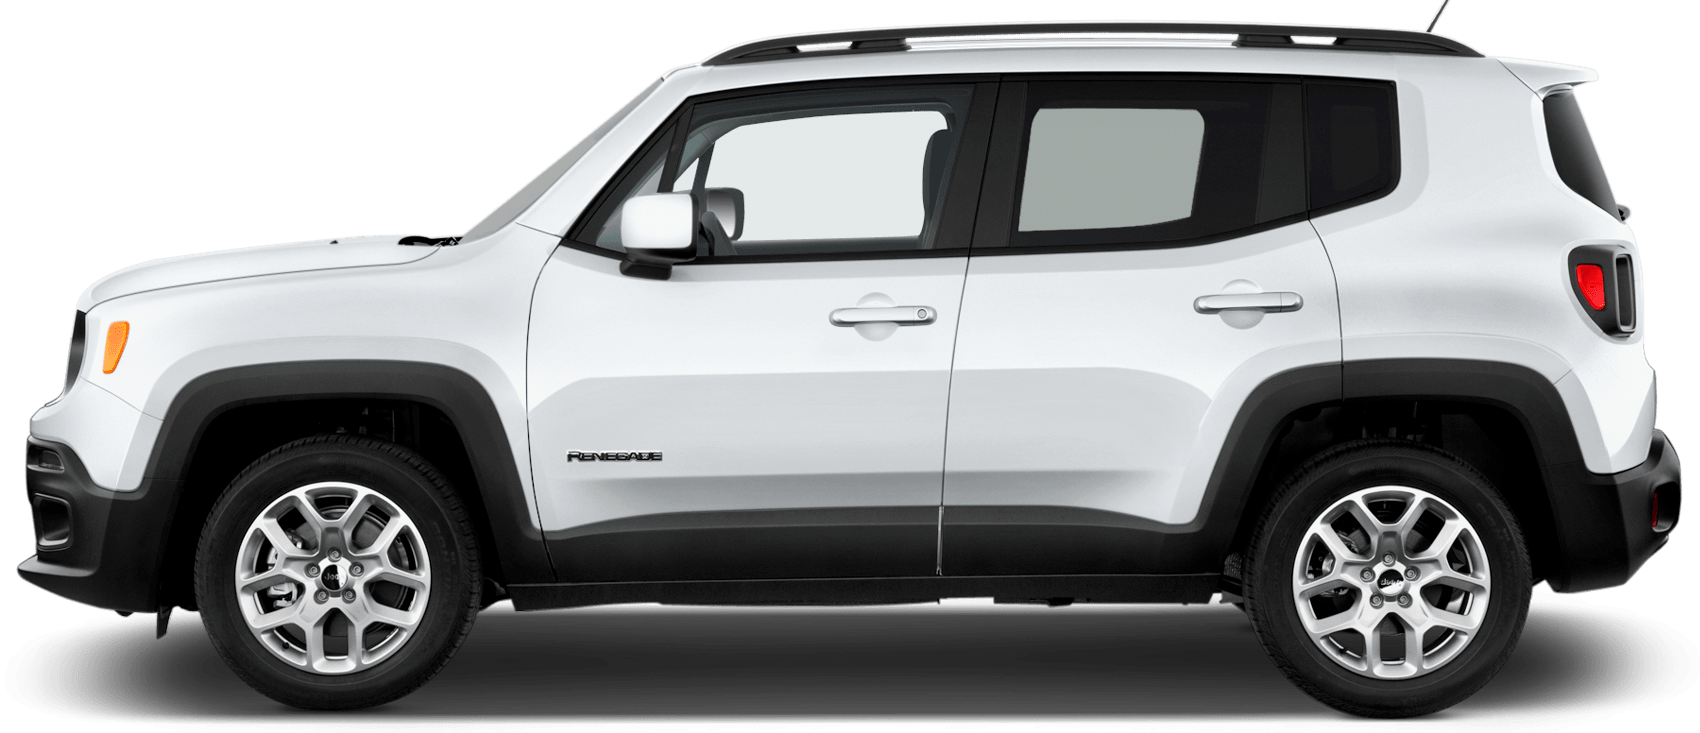 Renegade Engineering Car 2017 Biotechnology PNG